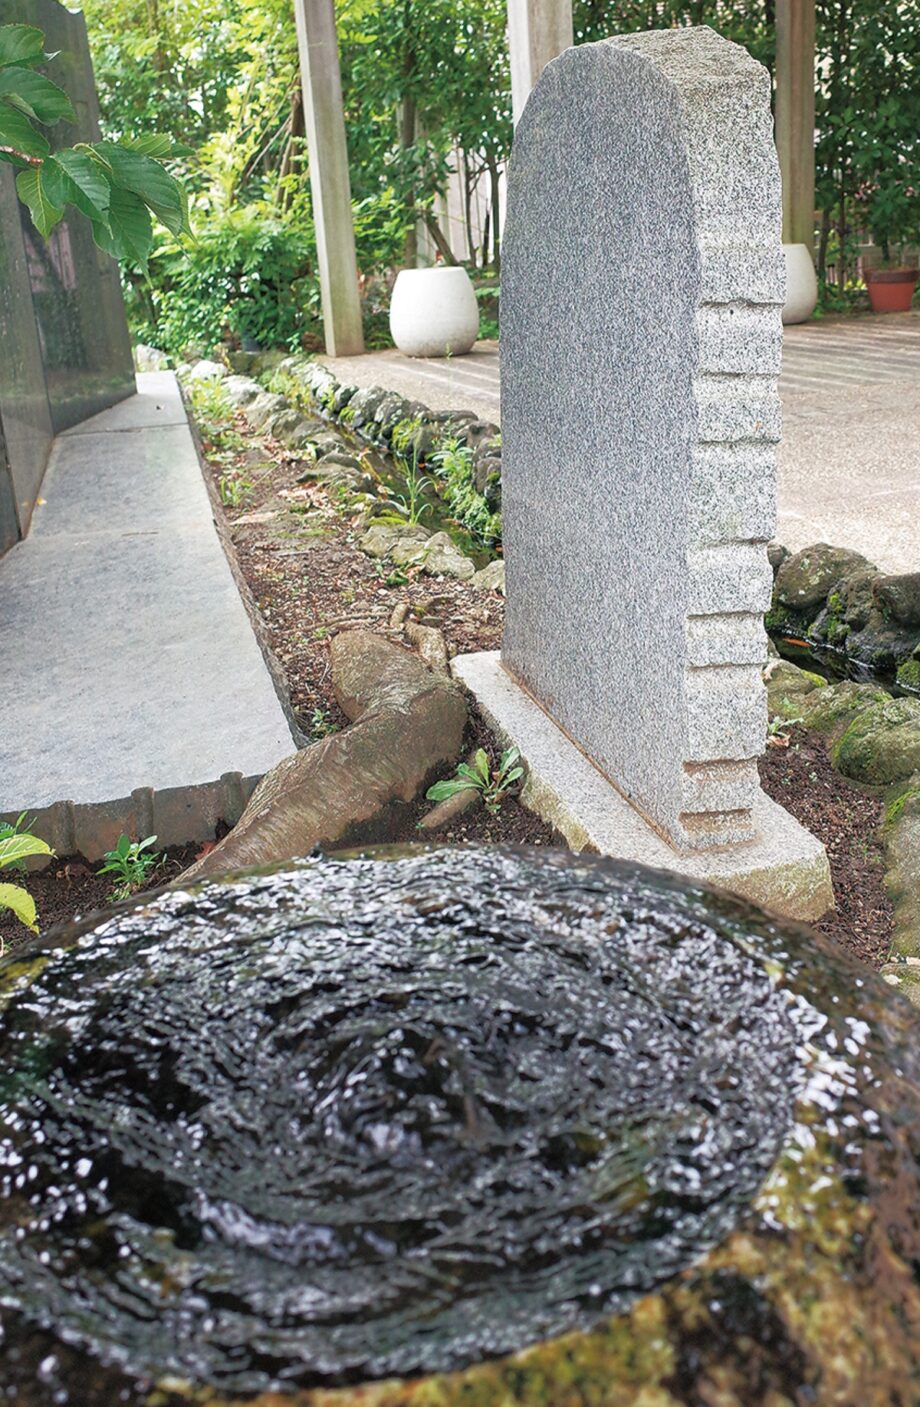 〈記者のまちあるき〉碑が伝えるものを考えた＠松田町役場入口にある湧水